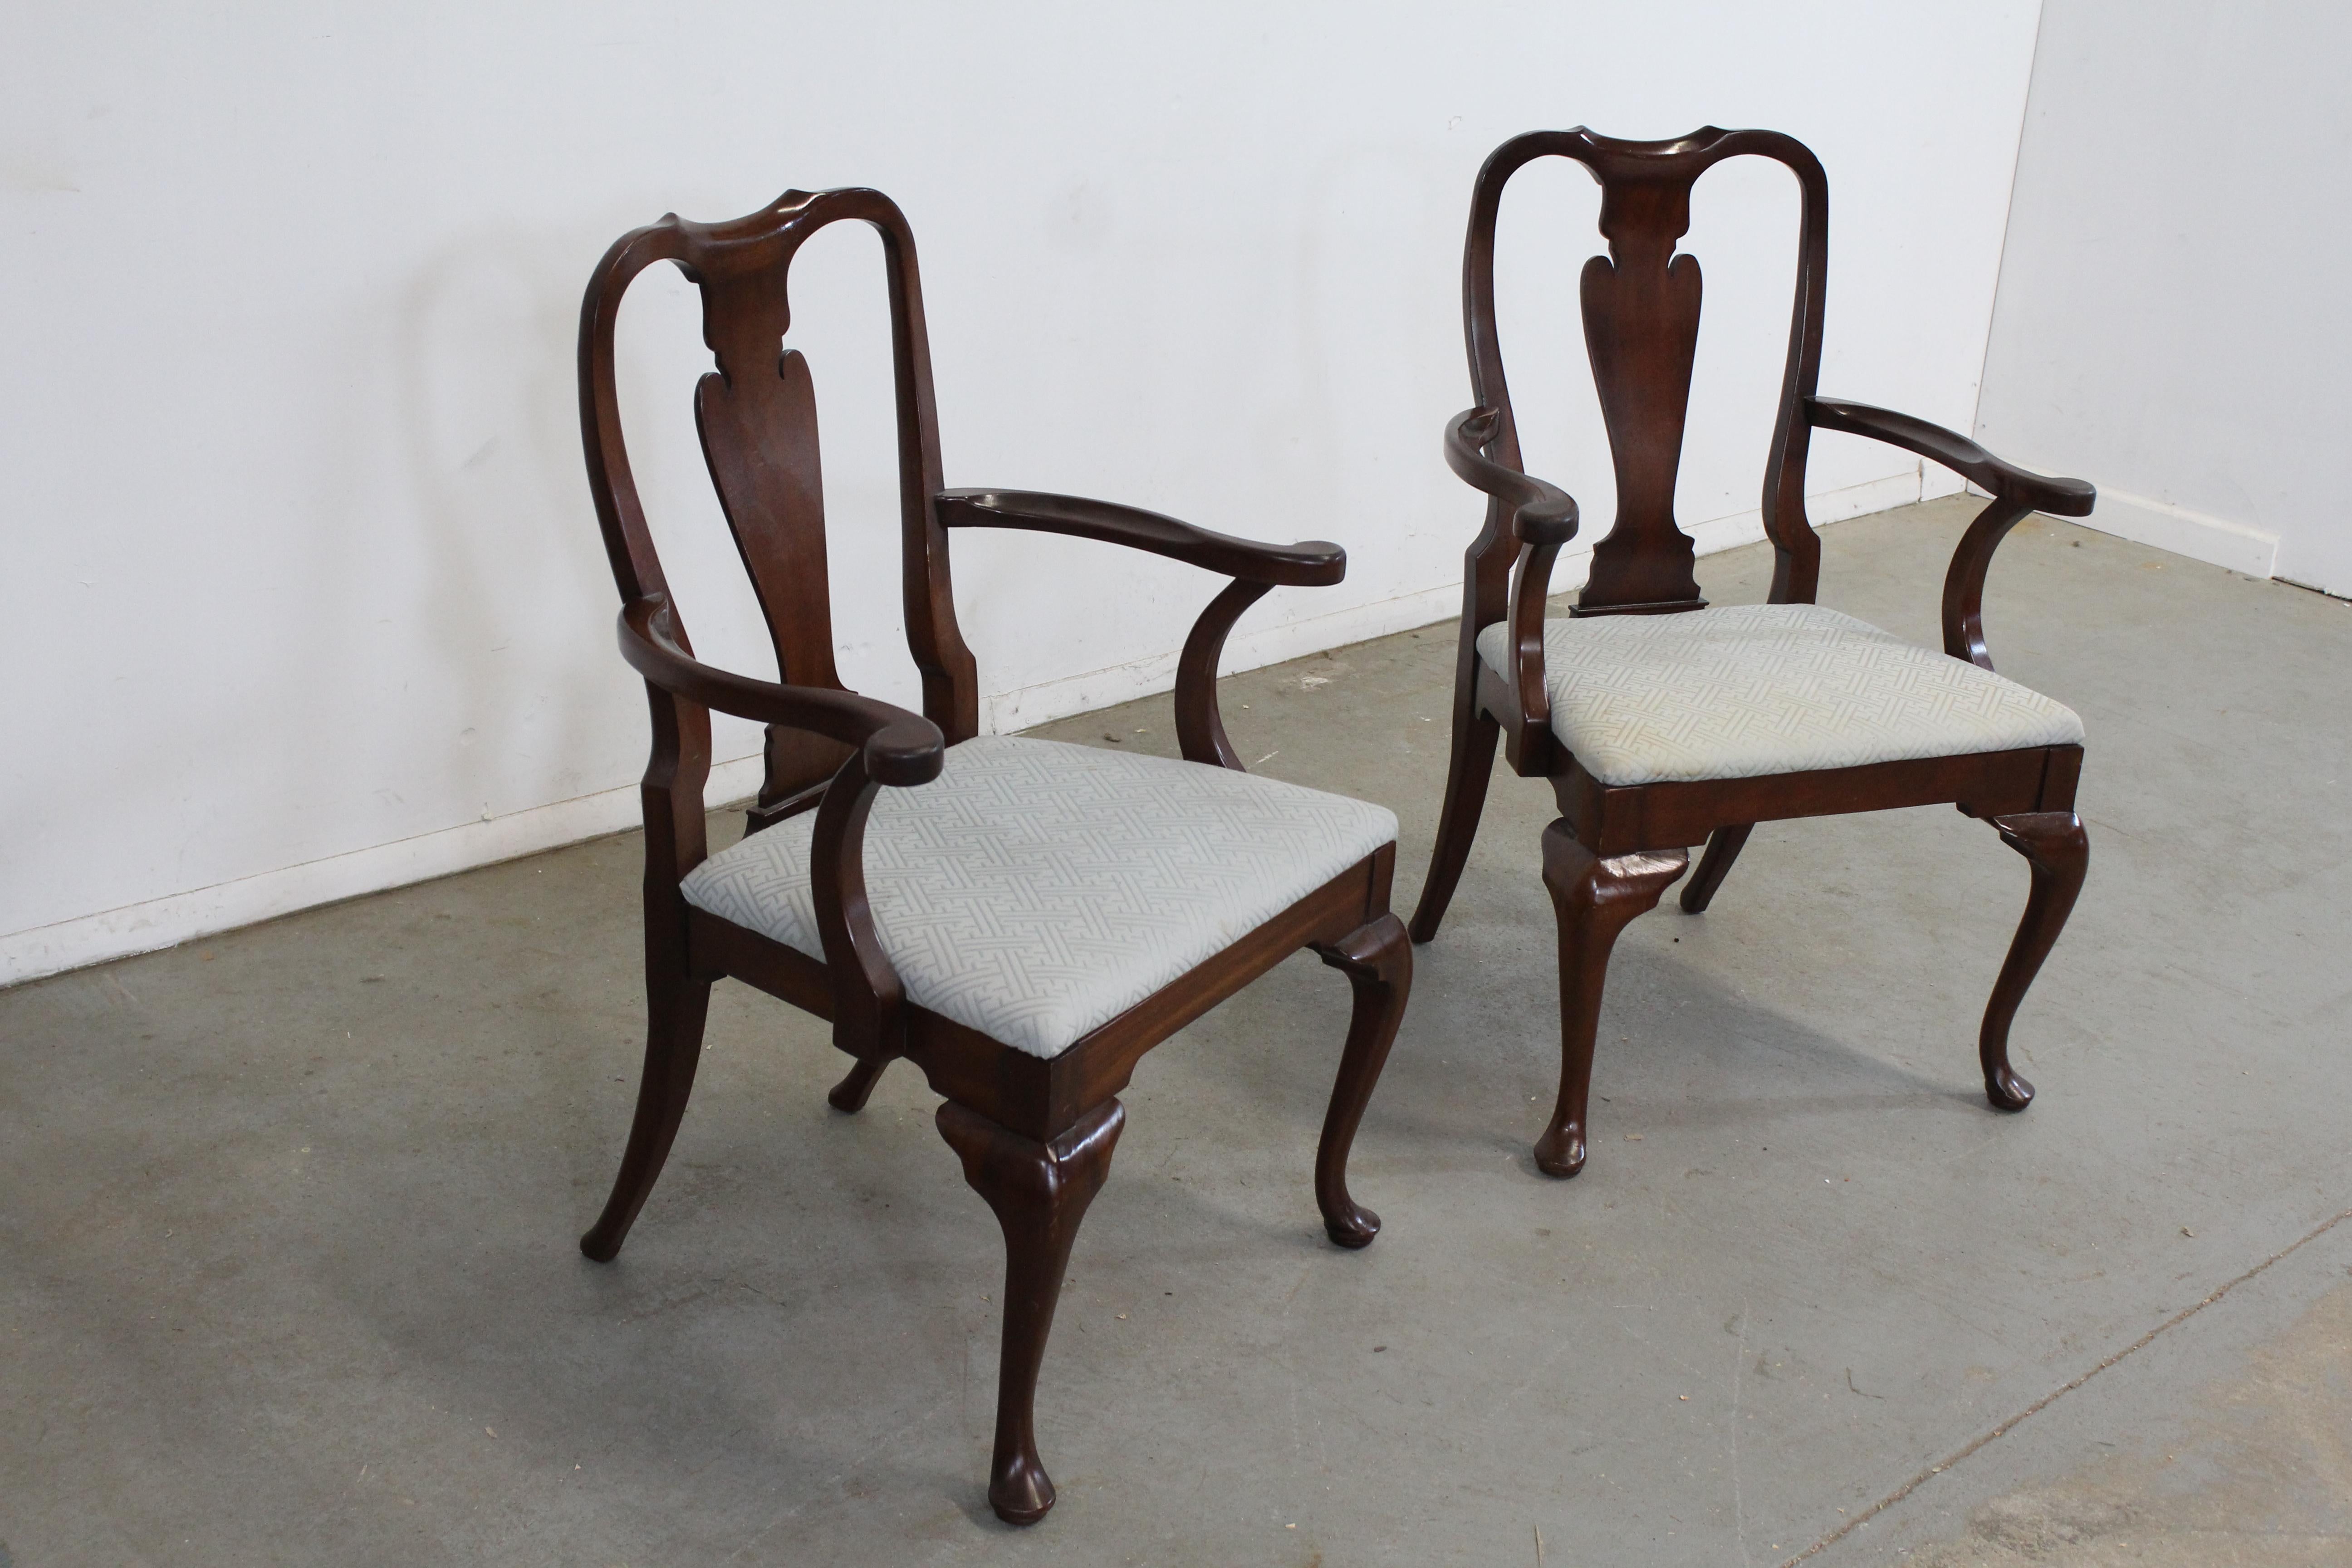 Paire de chaises de salle à manger de reproduction Queen Anne en acajou massif.

Nous proposons une paire de reproductions de chaises de salle à manger Queen Anne en acajou massif. Ils sont fabriqués en bois d'acajou massif et ont des sièges